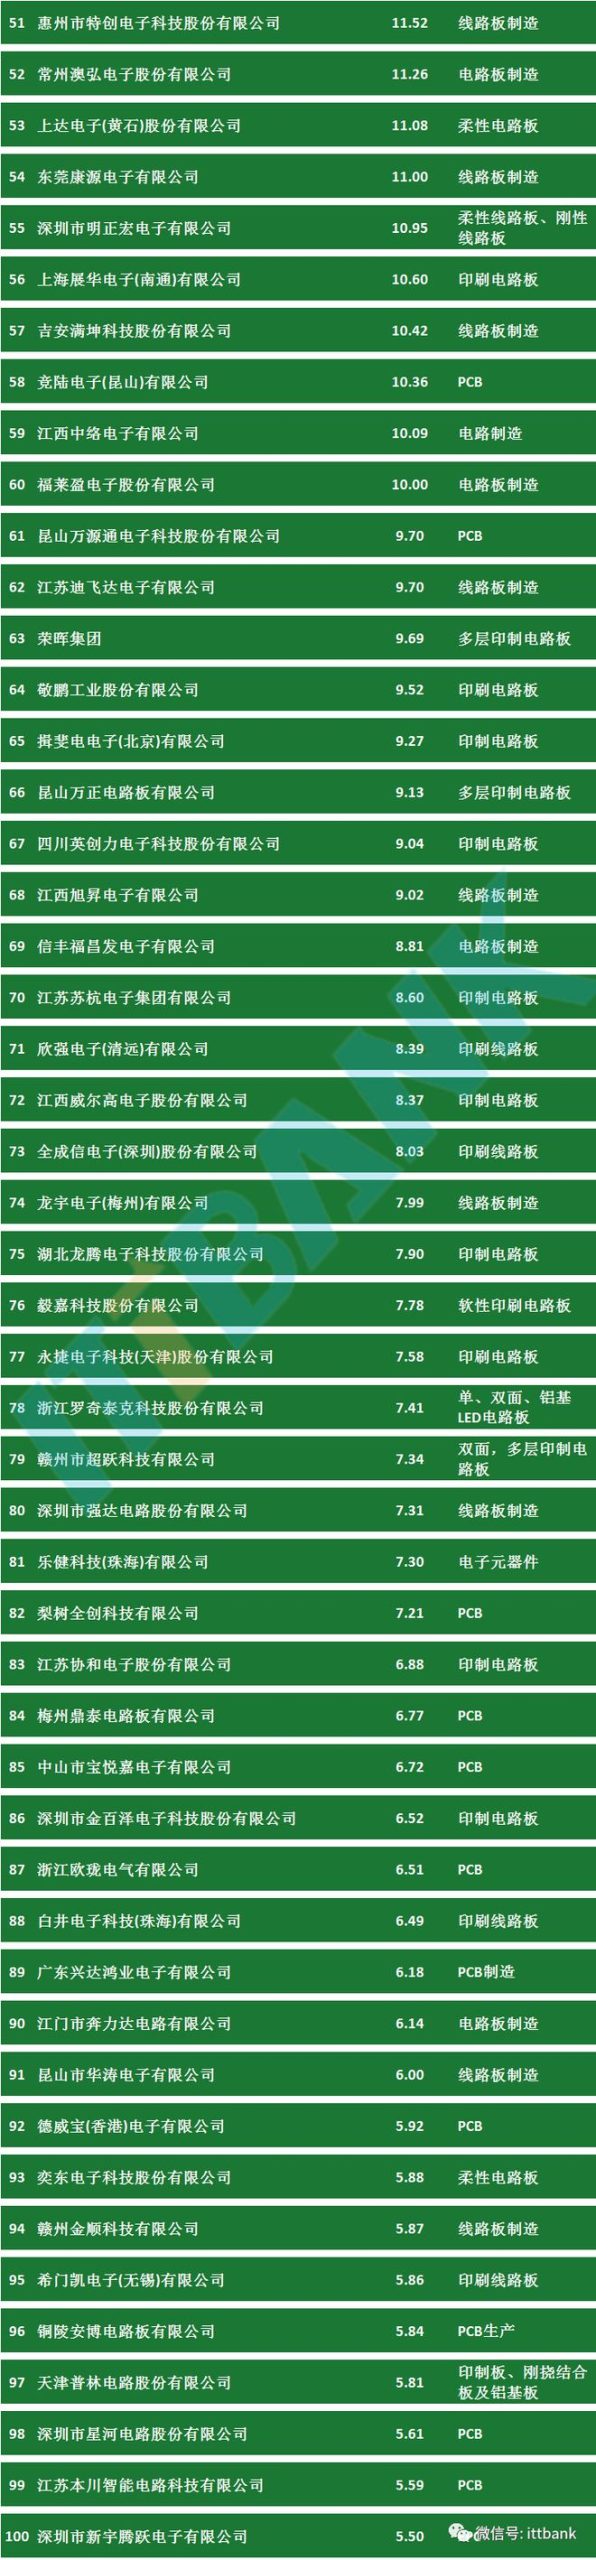 中国PCB线路板公司排名表-2